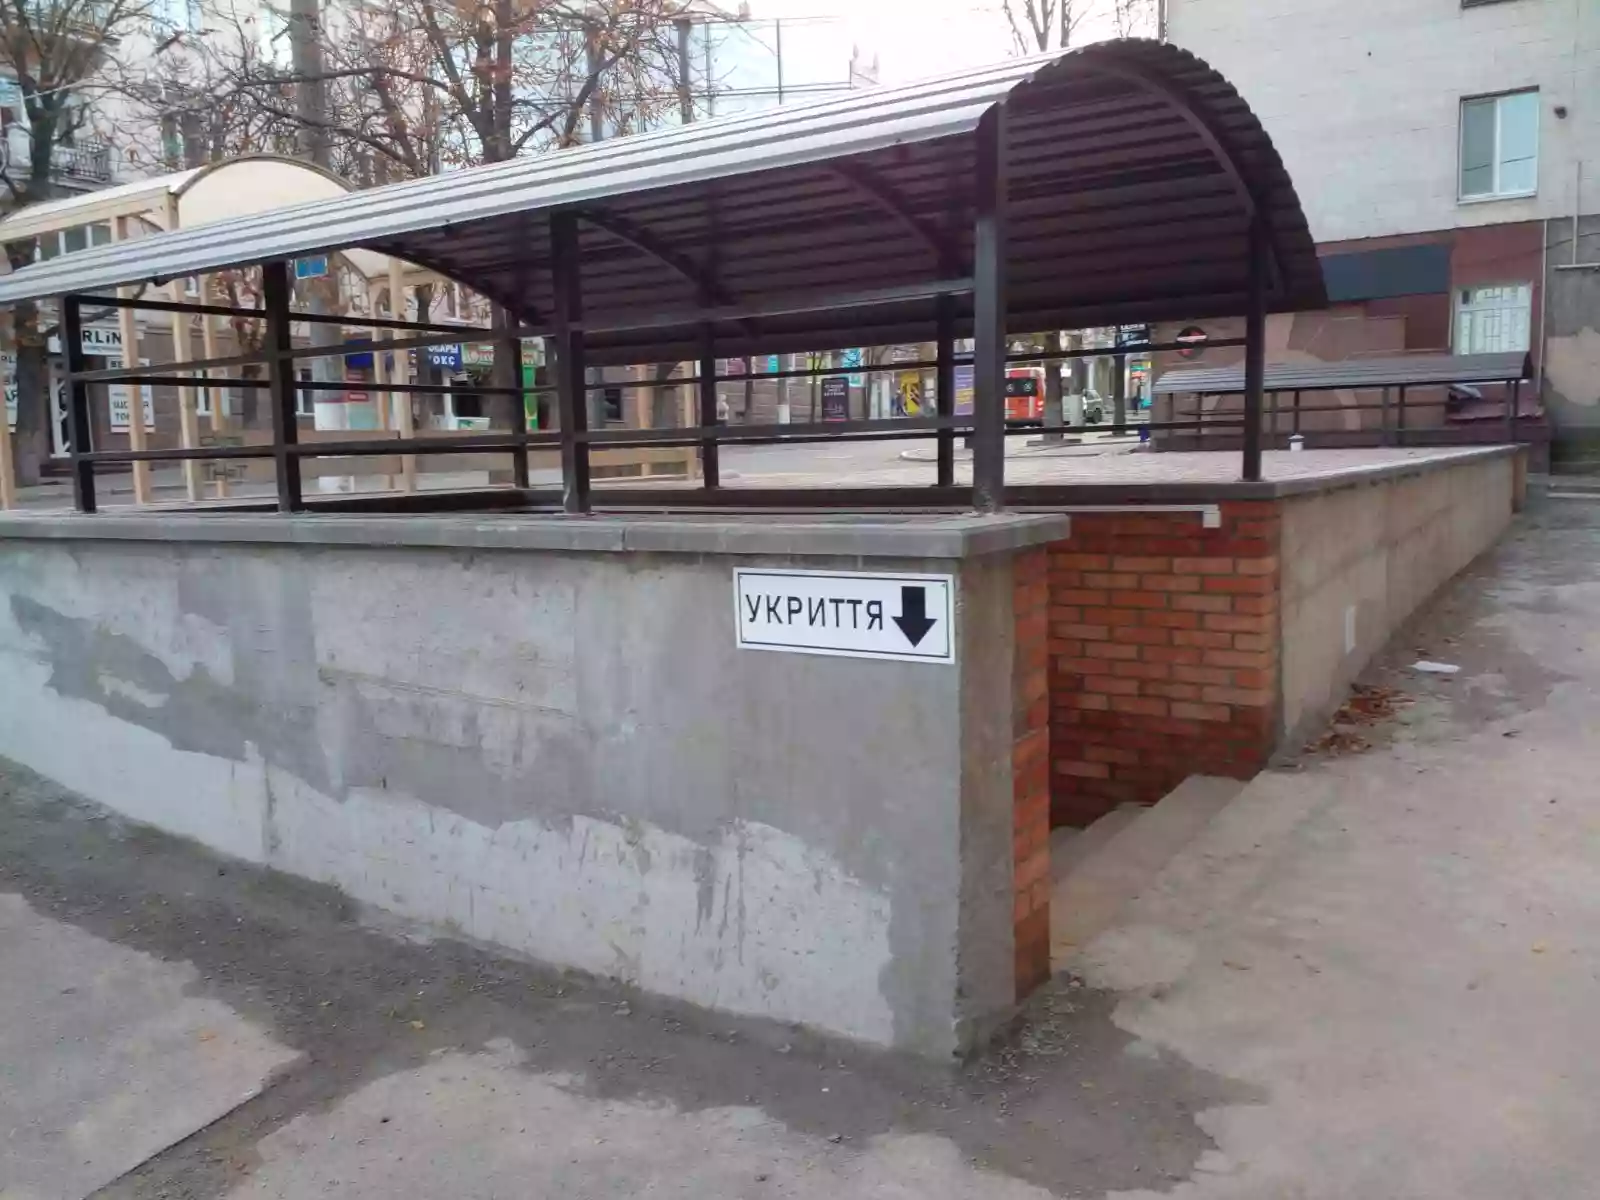 В Україні запустили бот, через який можна поскаржитися на зачинені укриття